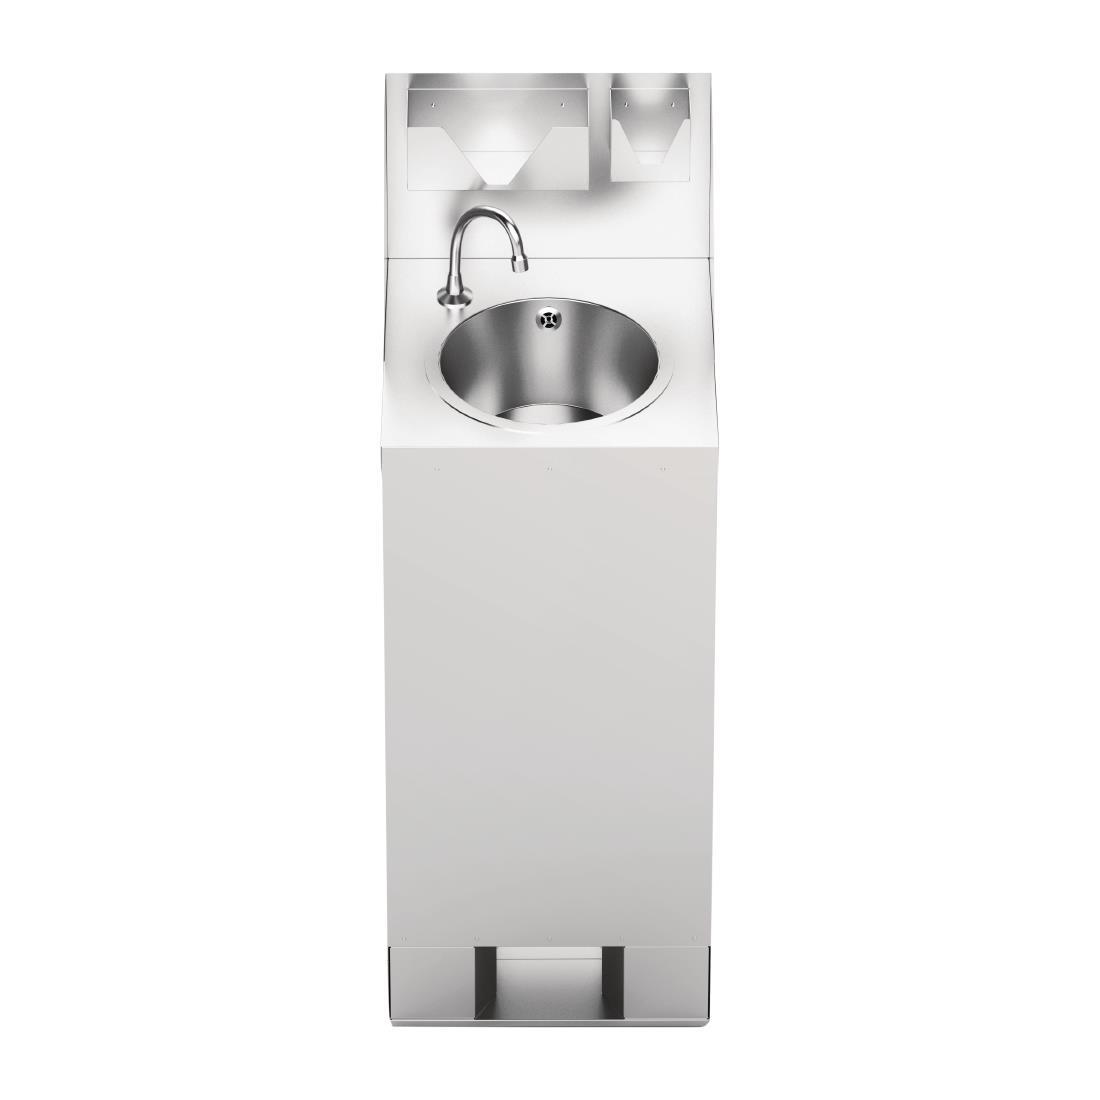 IMC Mobile Hot Water Hand Wash Station 10Ltr - DA248  - 5